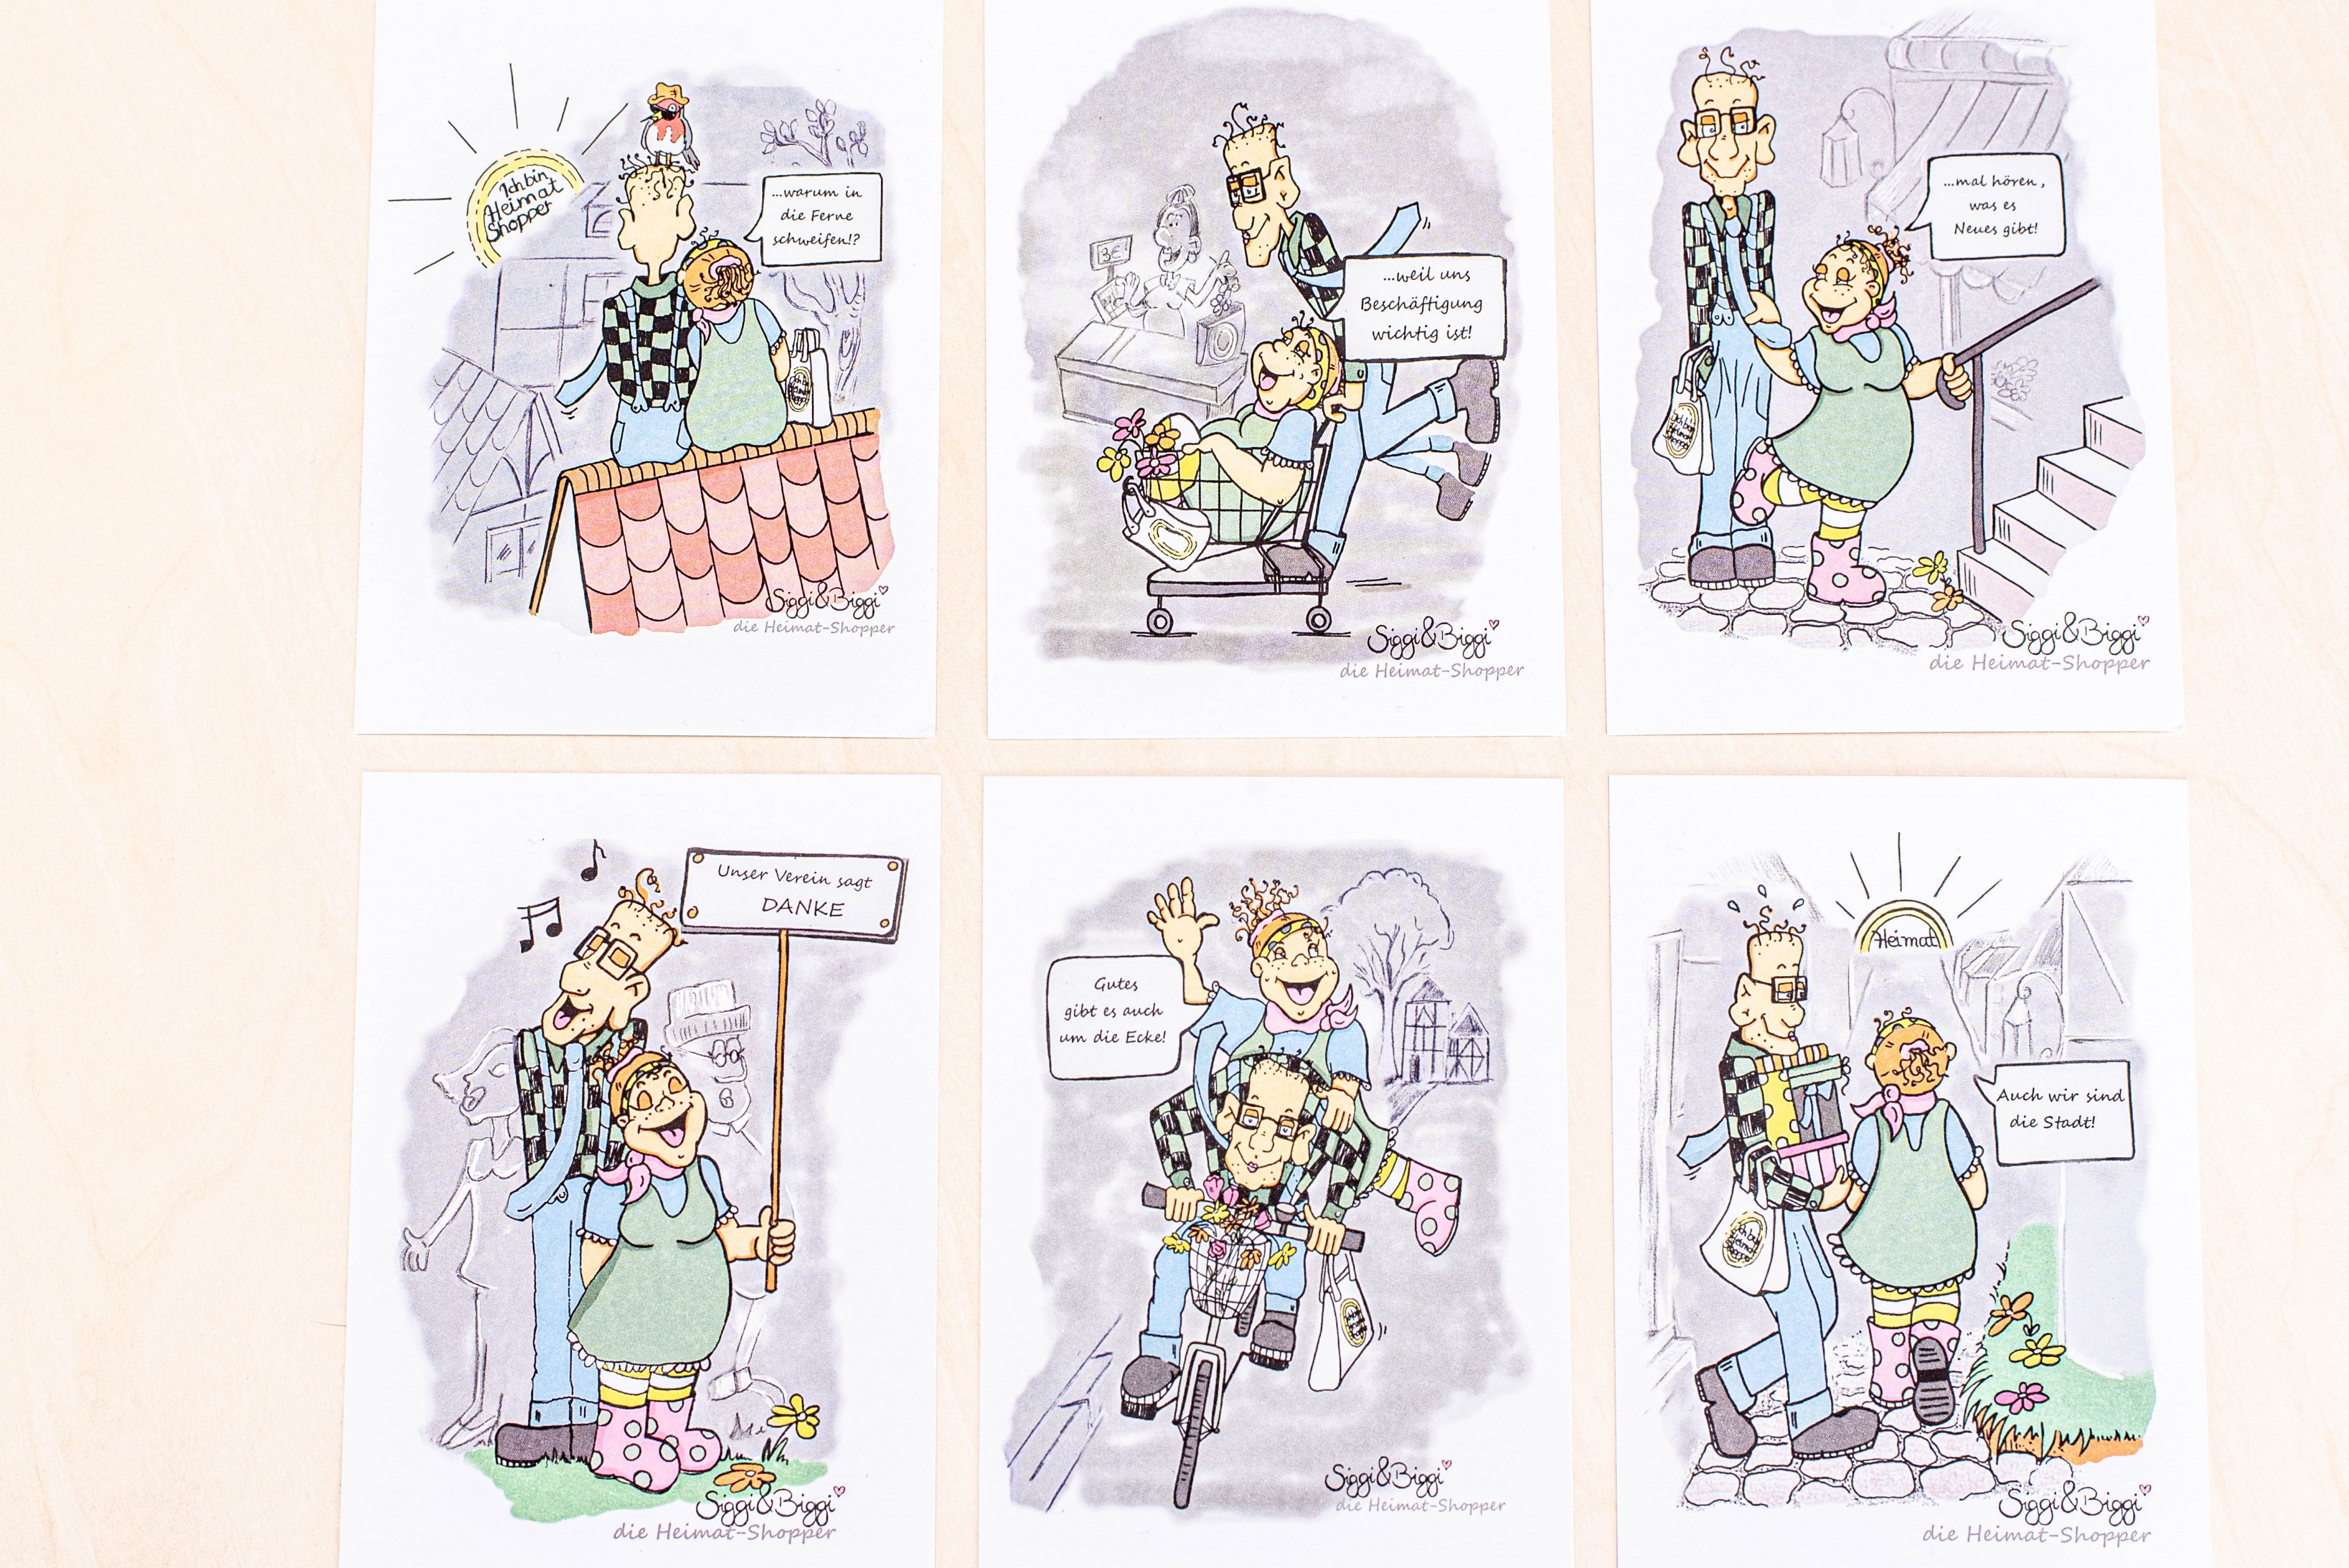 Statt Flyern zum Heimat shoppen gibt es sechs Postkarten mit den Comicfiguren Biggi und Siggi. von Nils Dinkel